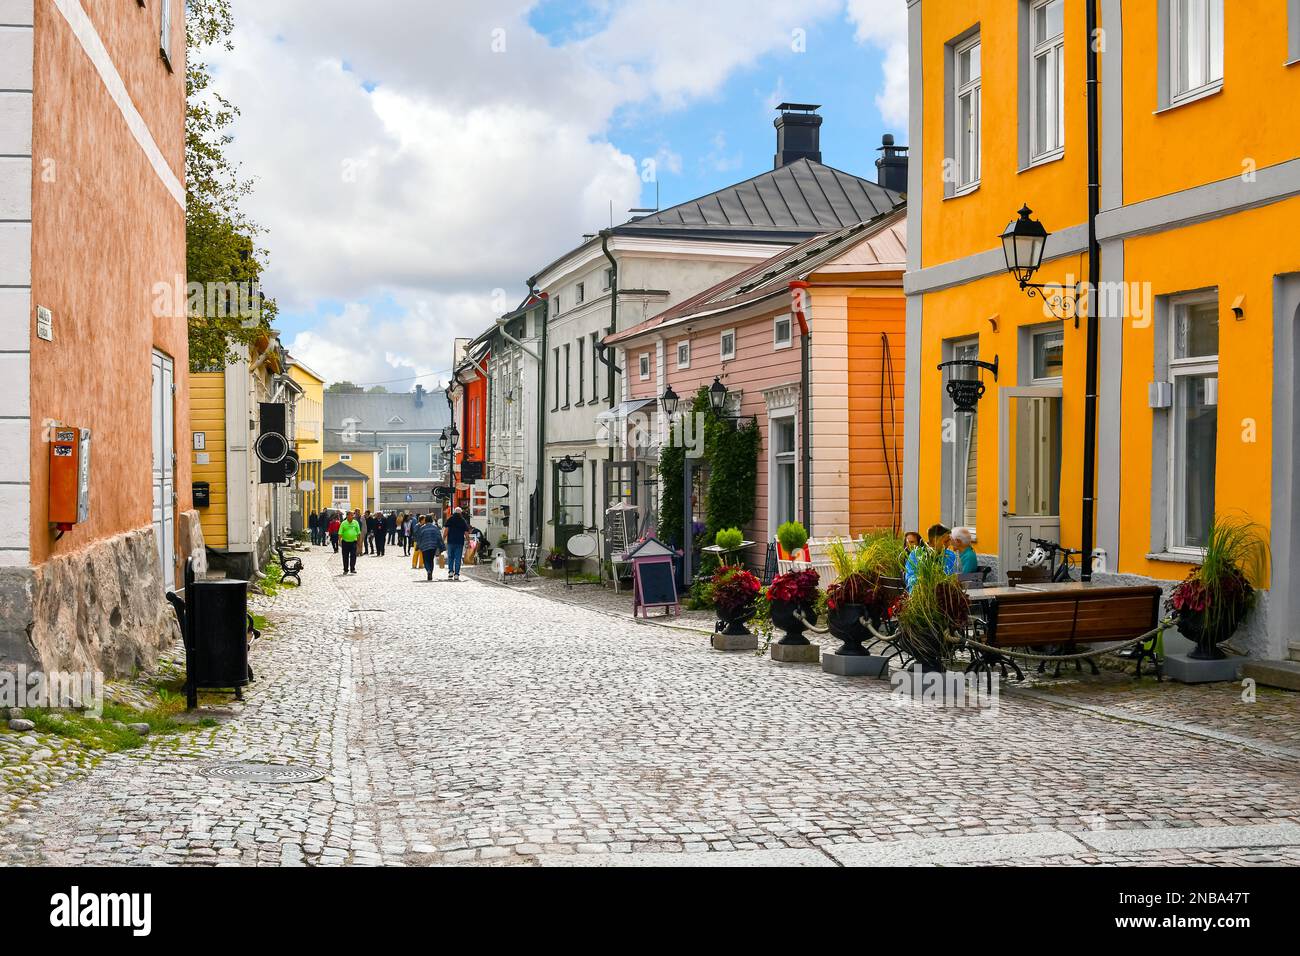 Negozi colorati e pittoreschi, caffetterie ed edifici in legno fiancheggiano la principale strada acciottolata attraverso il centro storico medievale di Porvoo, Finlandia. Foto Stock